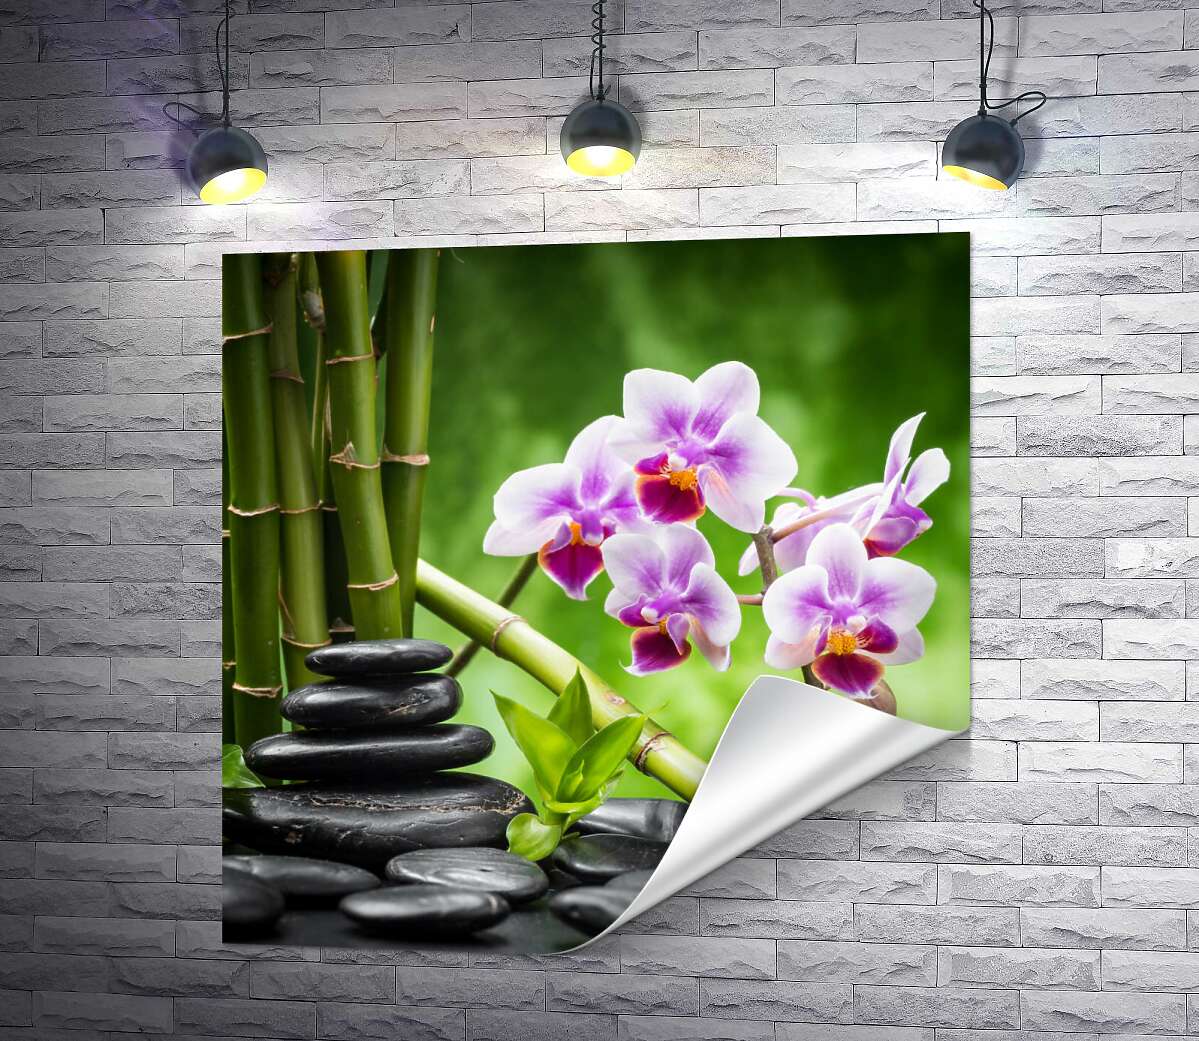 друк Заспокоєння природою: чорне каміння поряд з орхідеєю та бамбуком